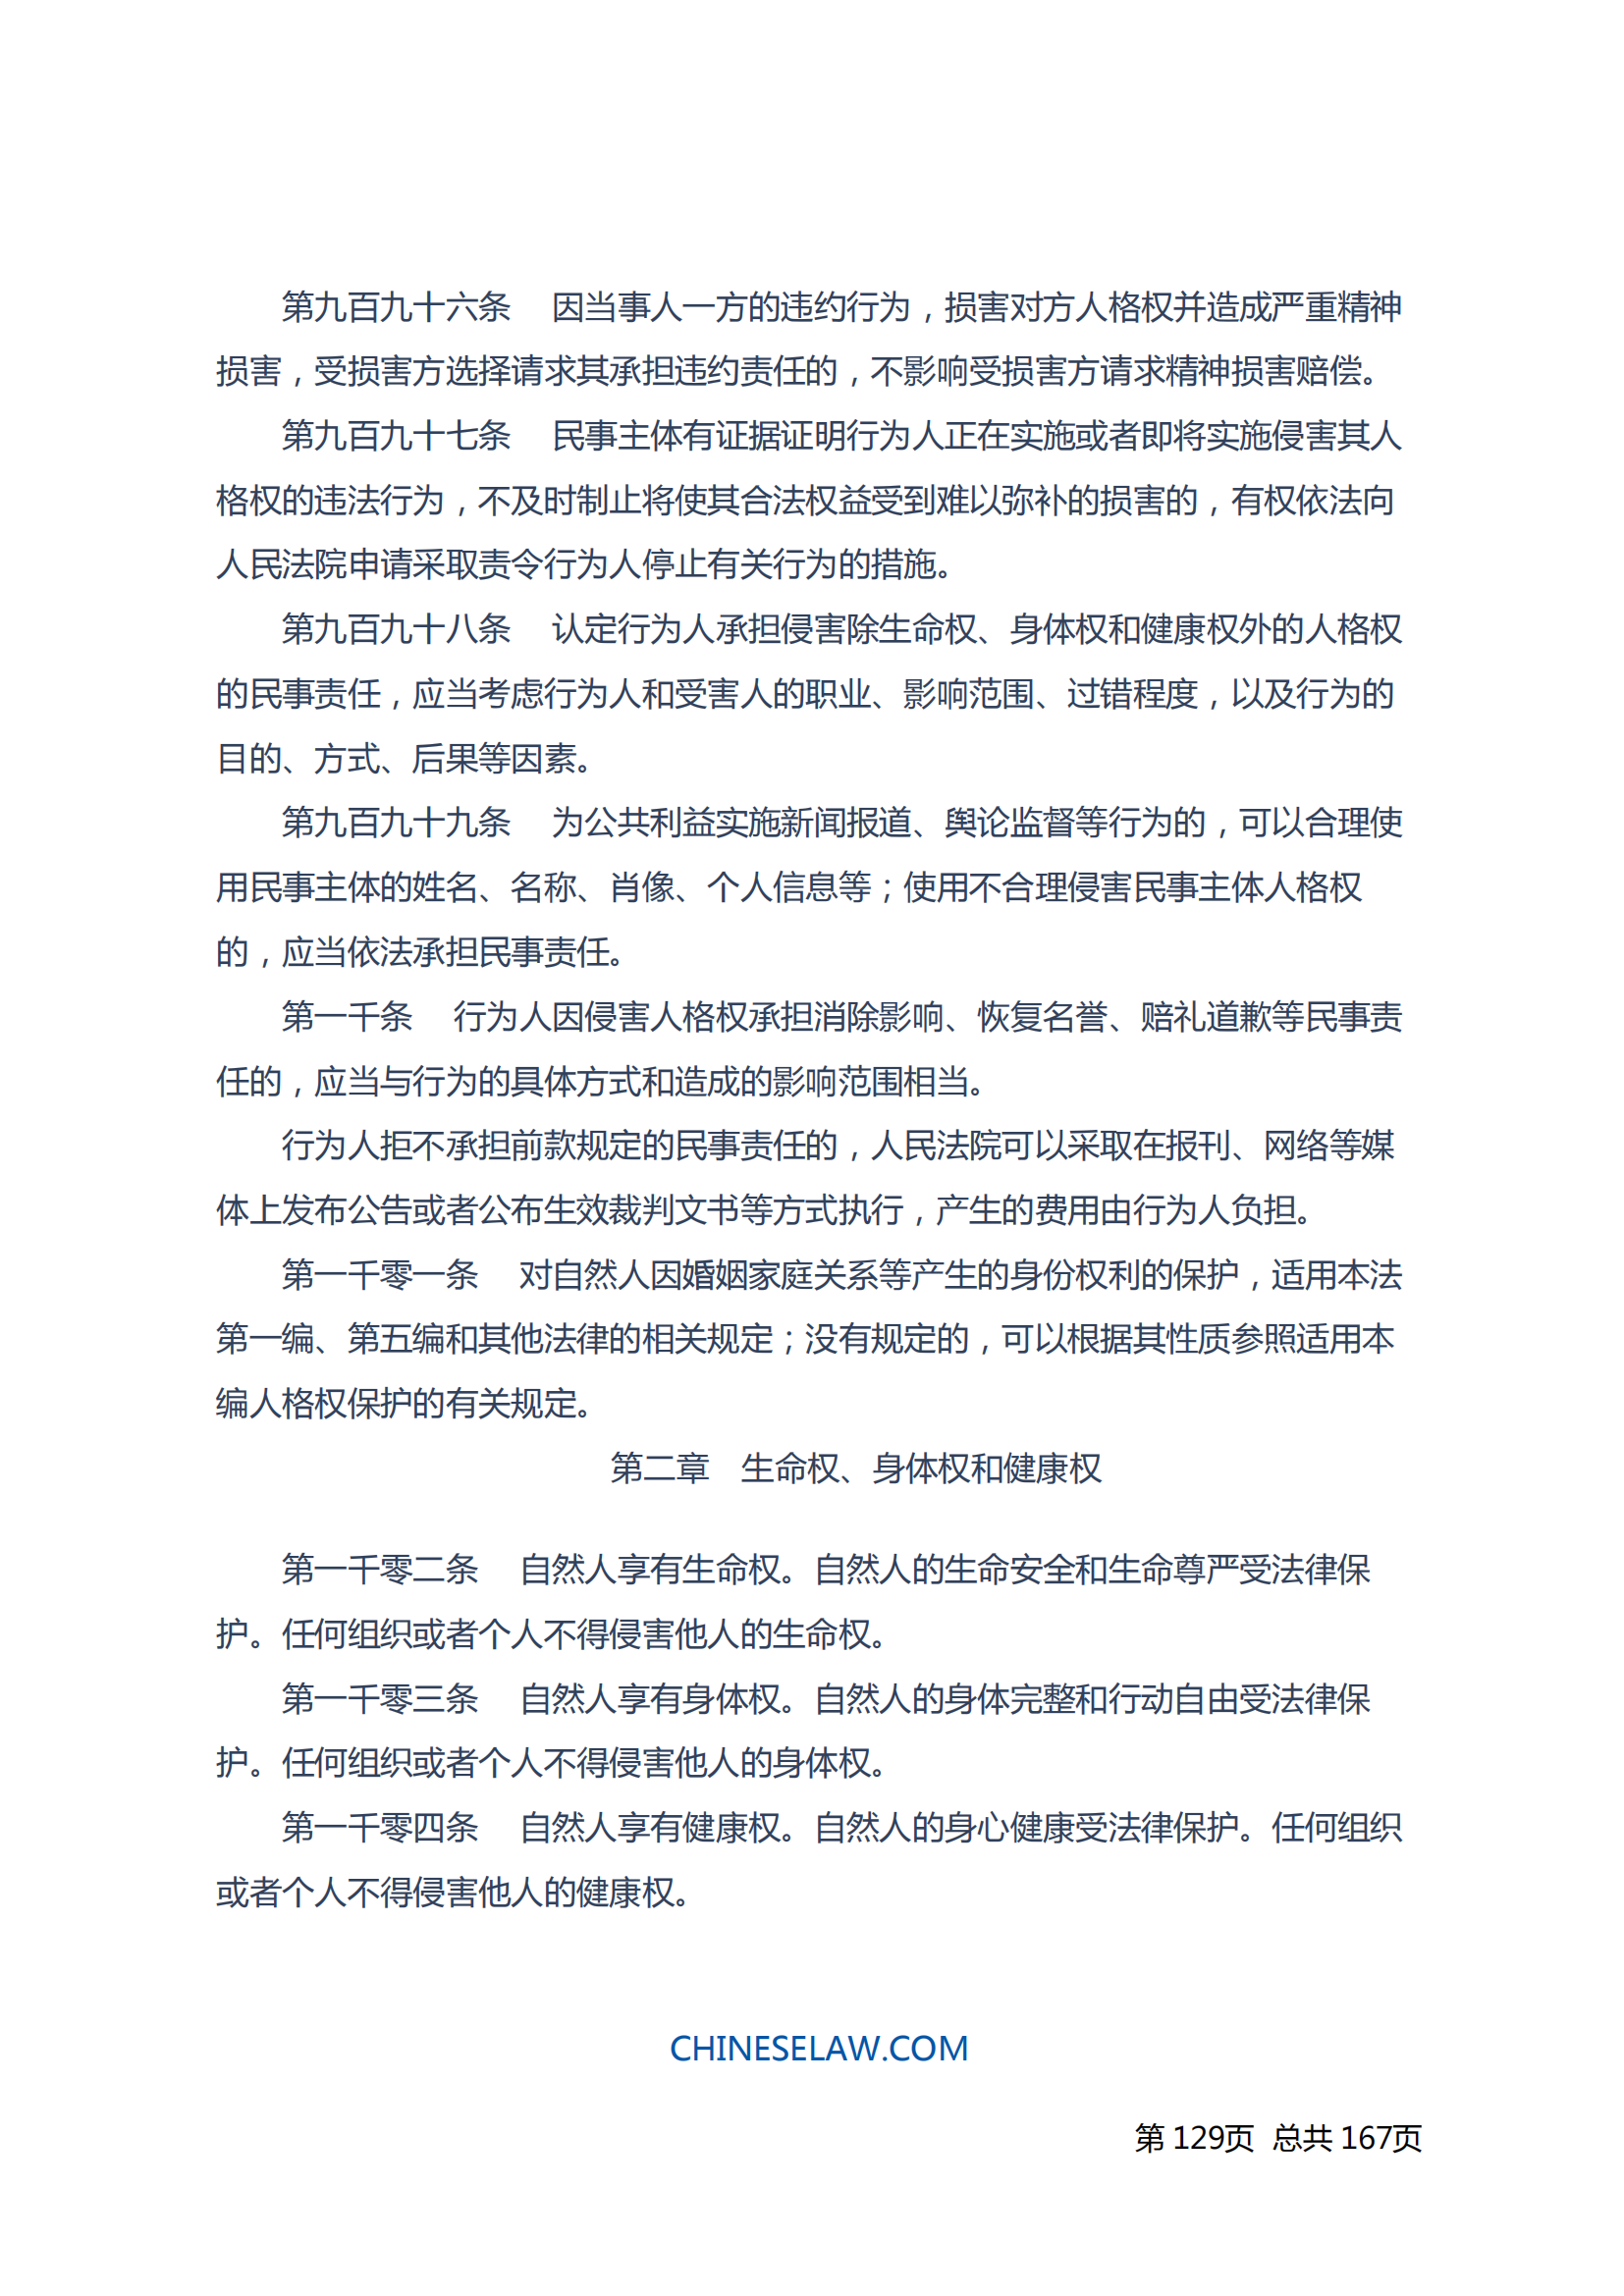 中华人民共和国民法典_128